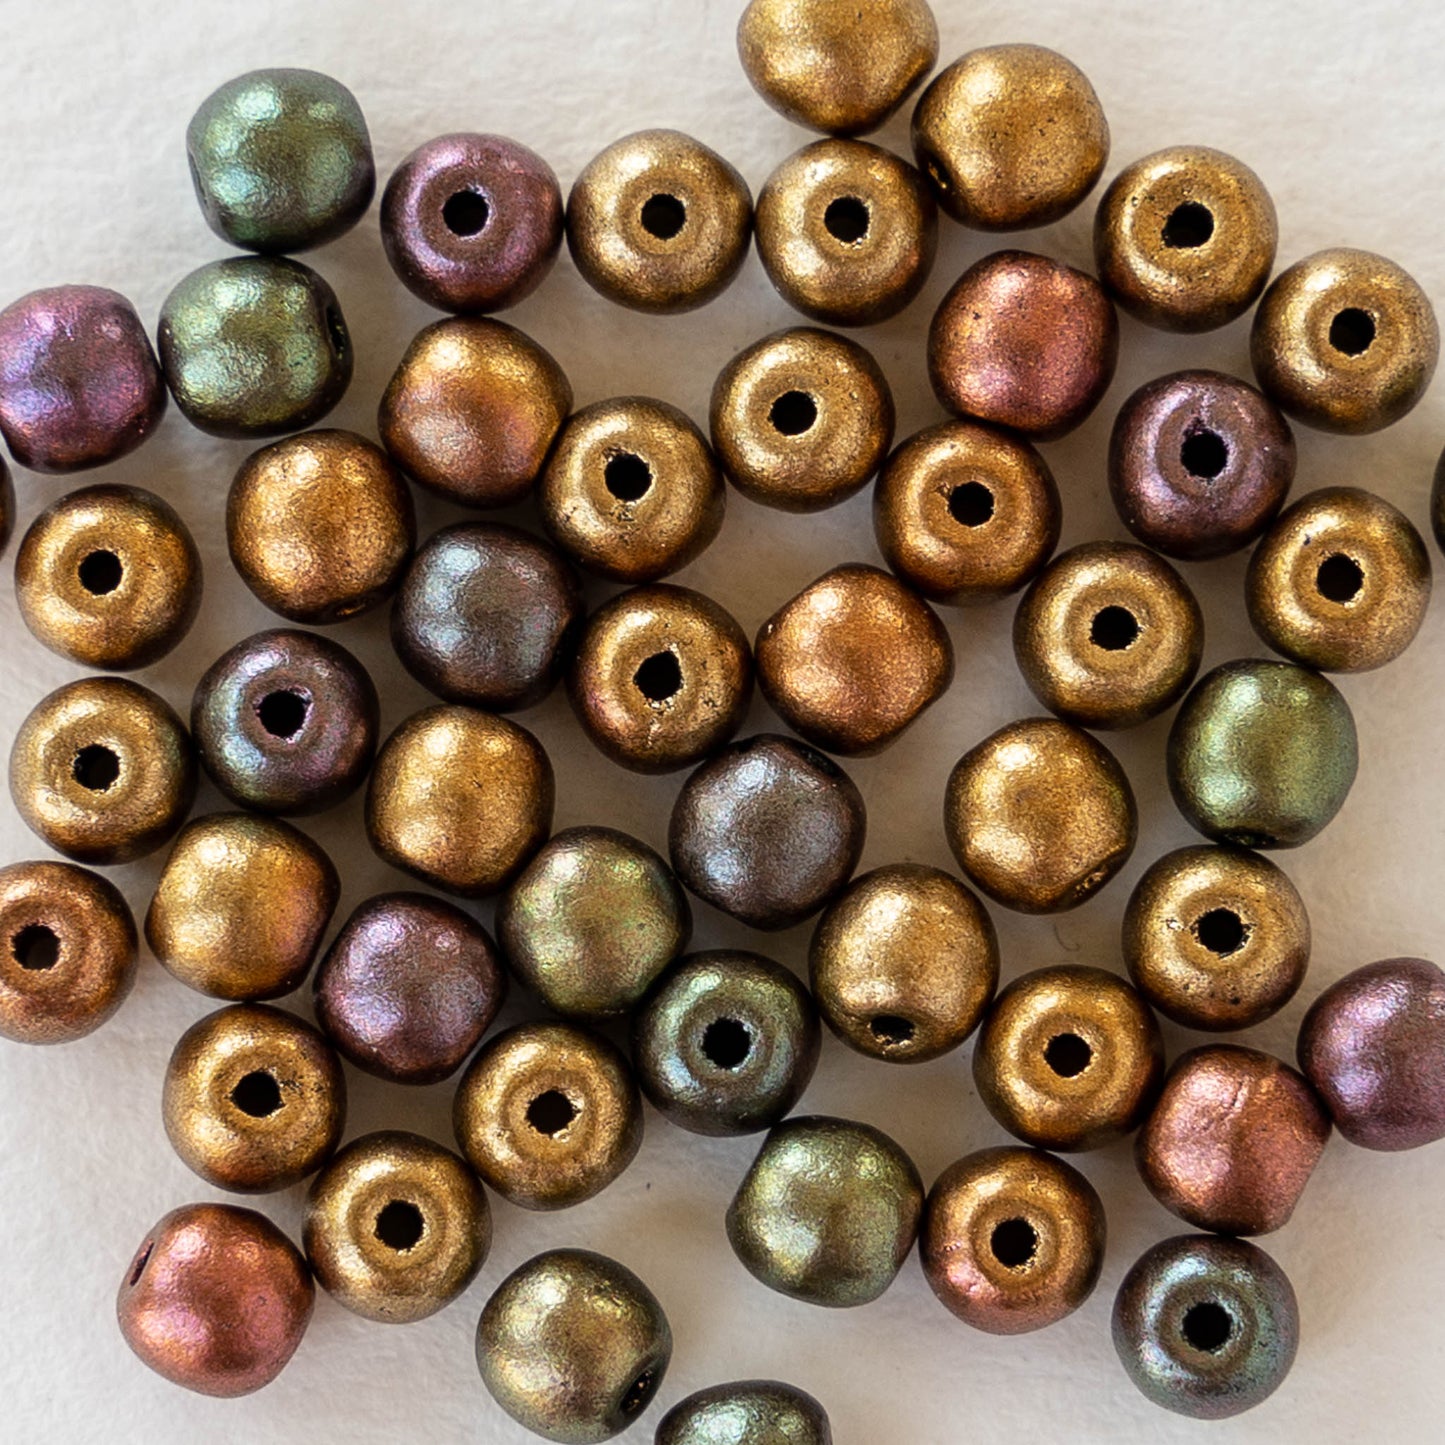 4mm Round Glass Beads - Metallic Bronze Iris - 100 Beads